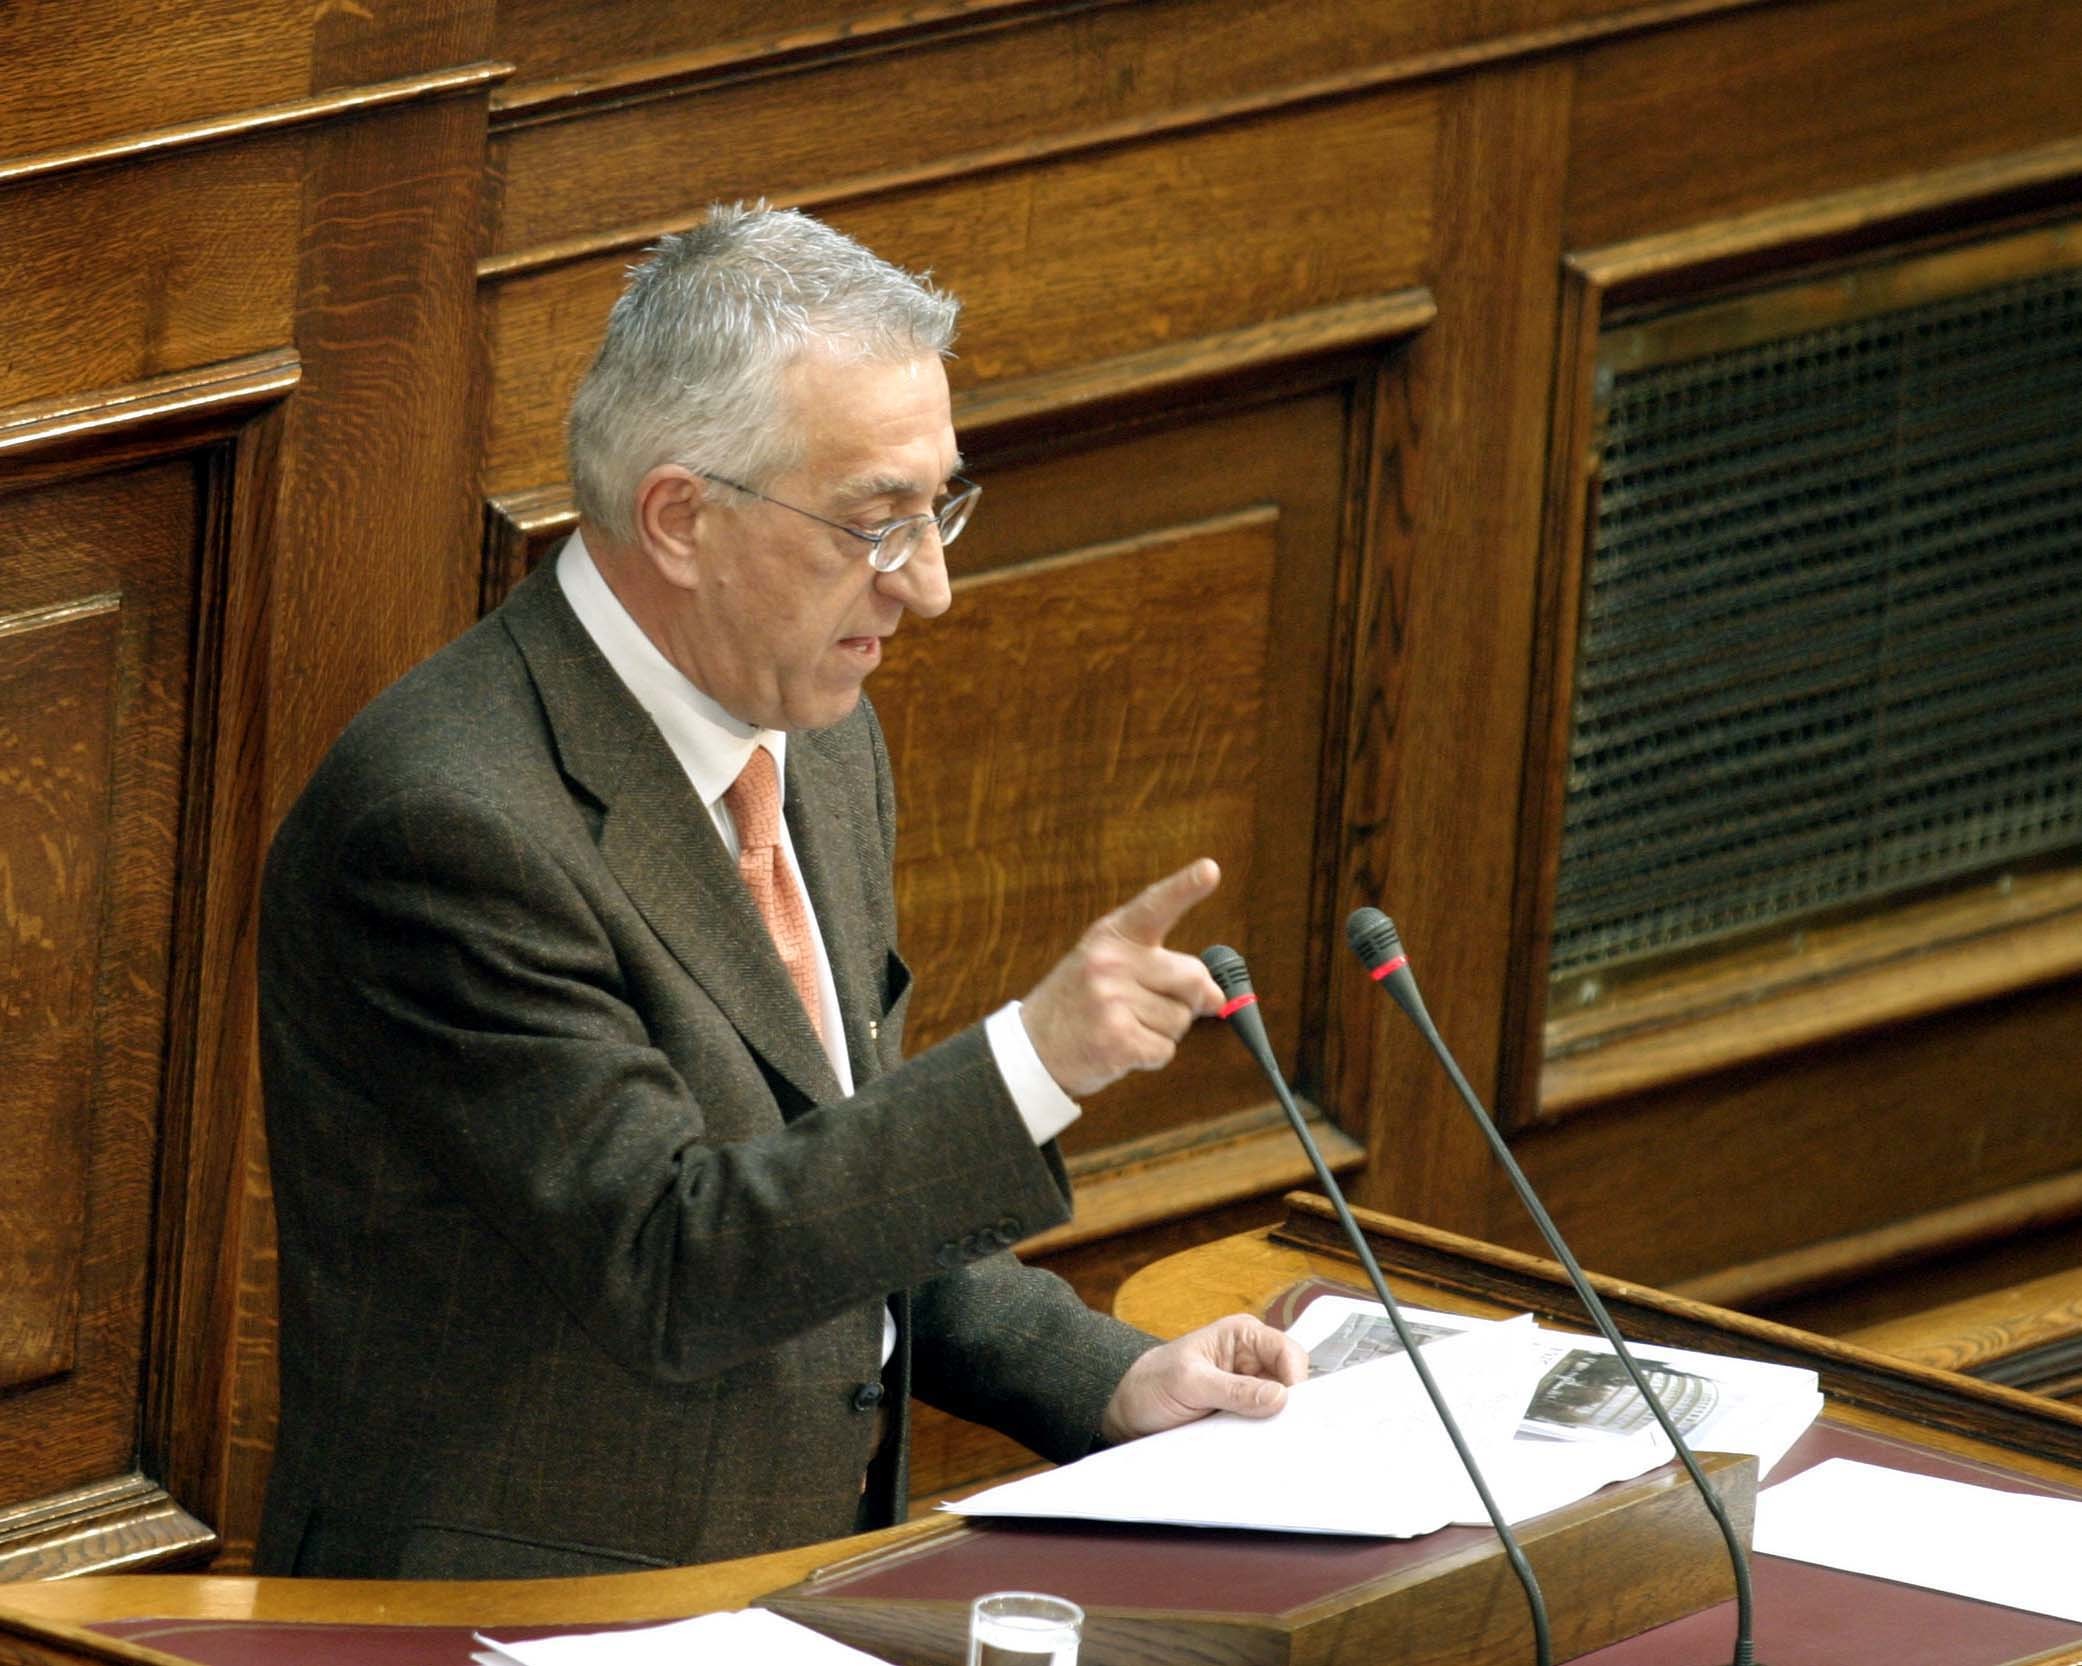 Ν.Κακλαμάνης: “Ο κ.Στουρνάρας πρέπει να καταλάβει πως είναι υπουργός και όχι πρωθυπουργός”